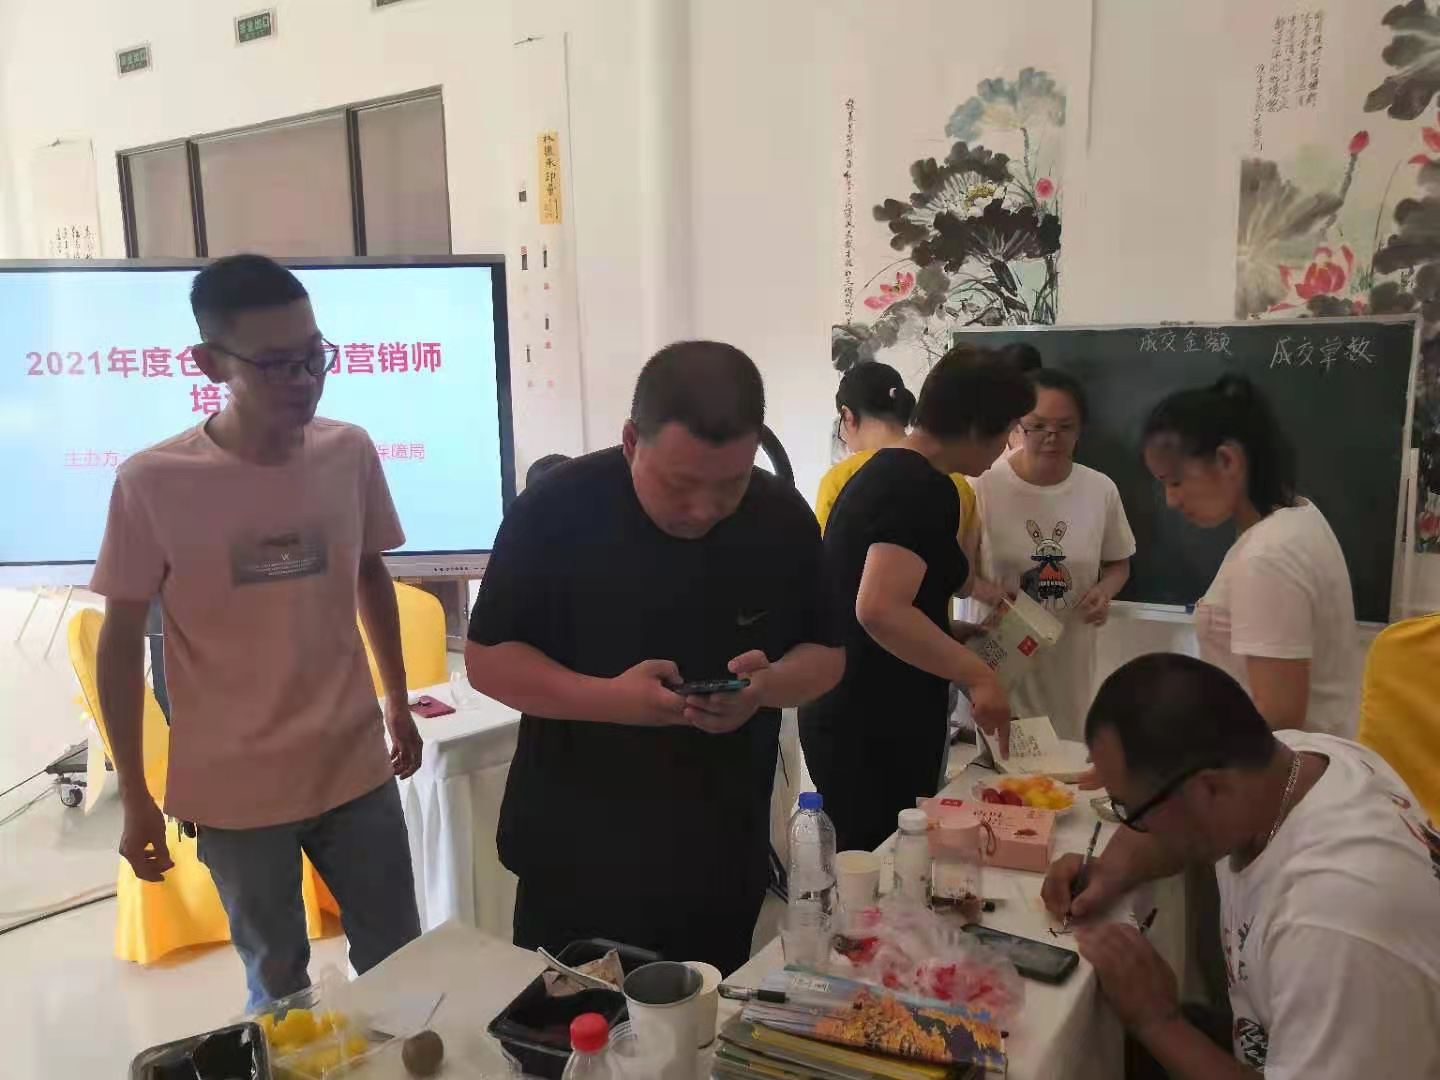 福建省新华技术学校互联网营销师培训班正式开班